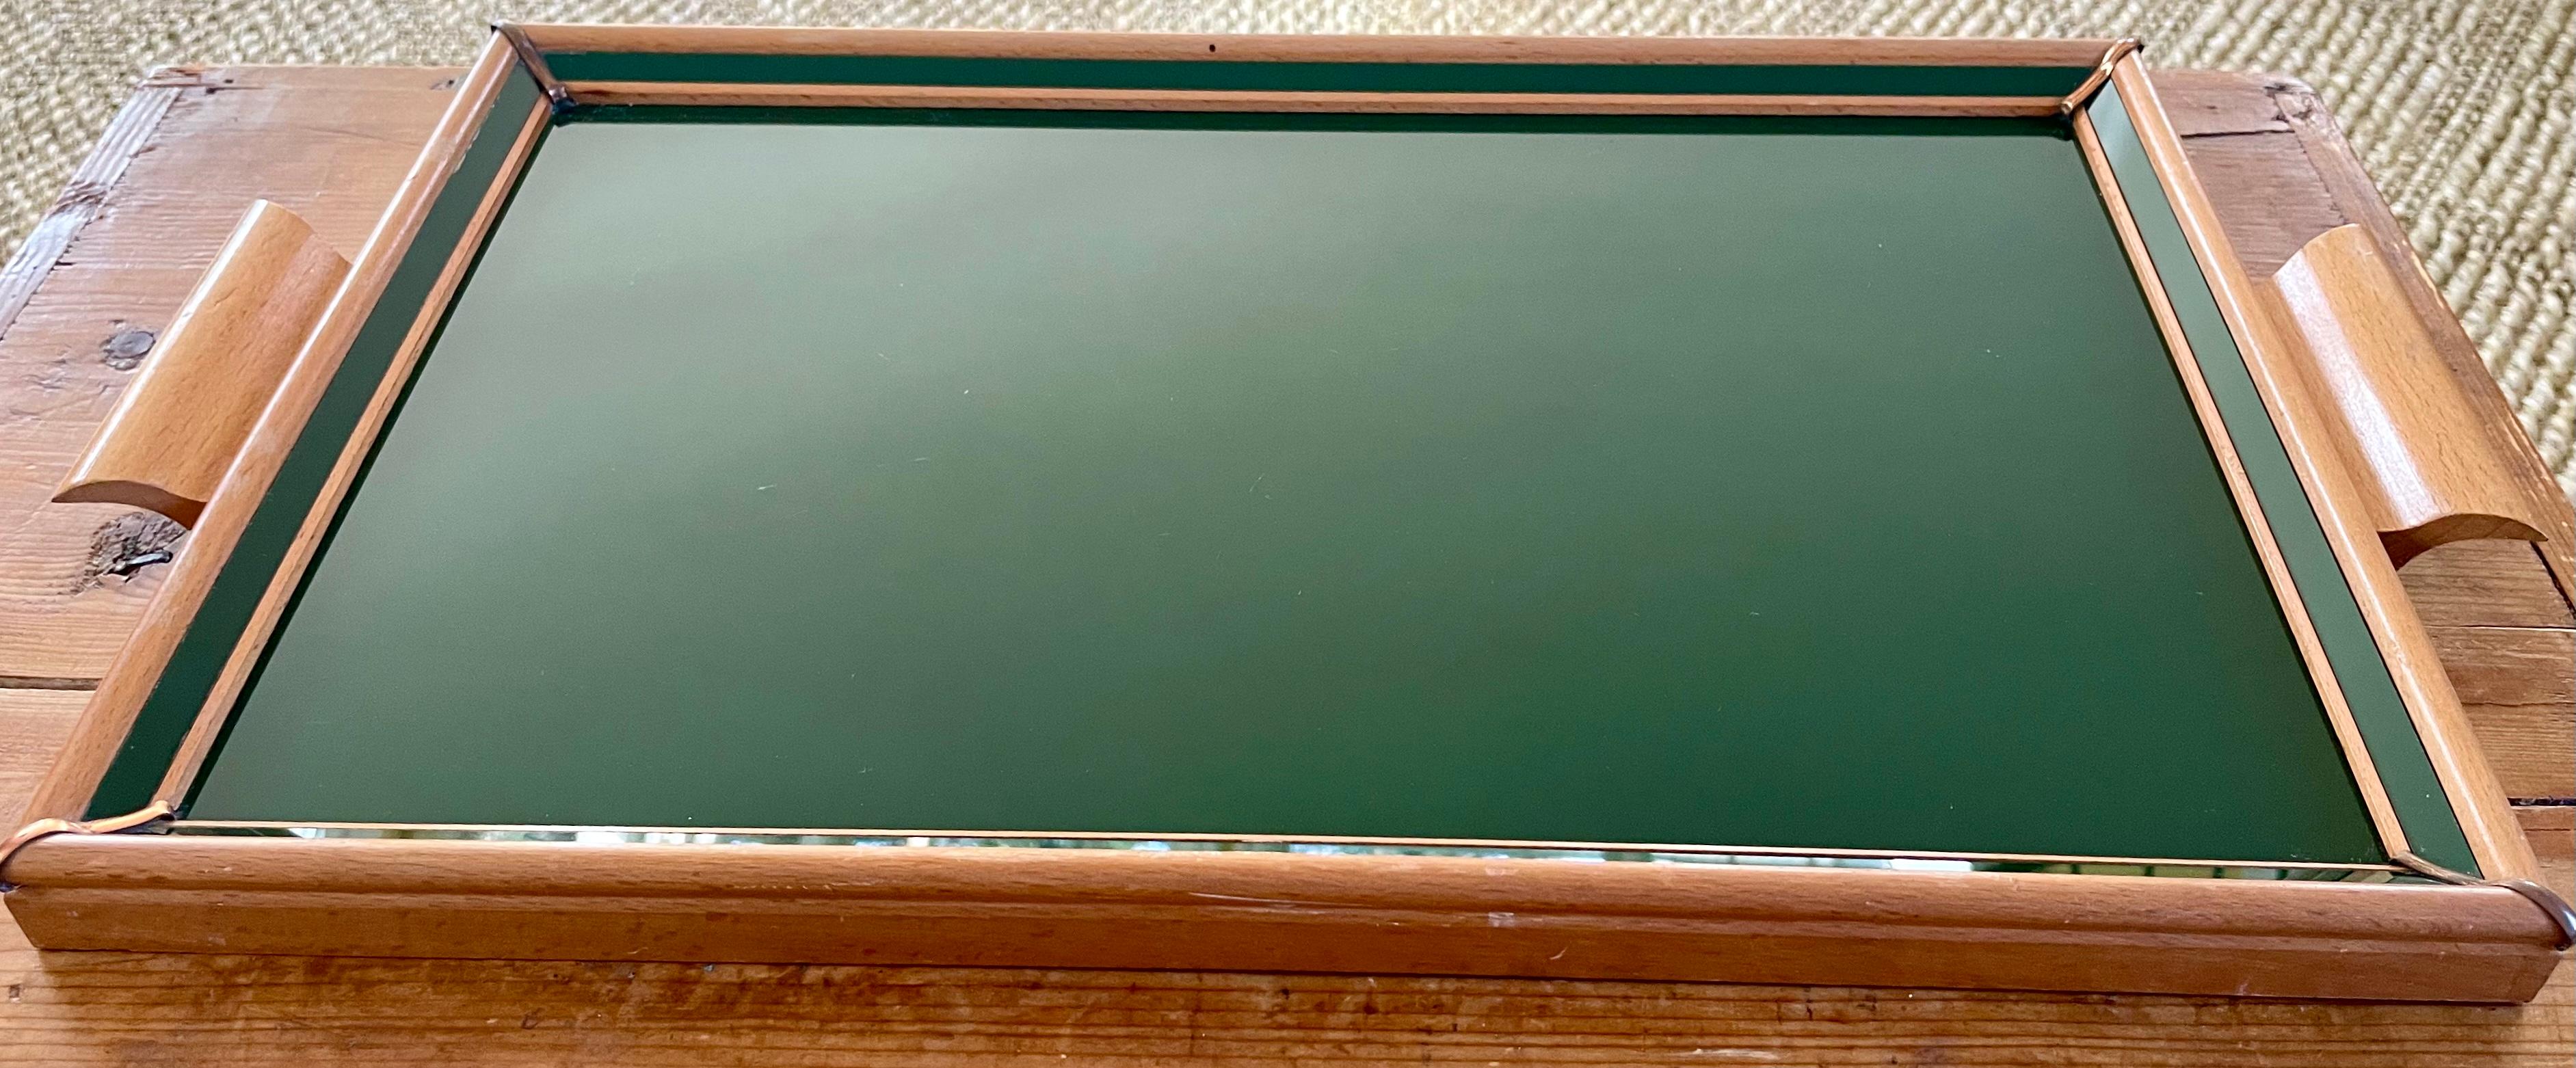 Italienisches Tablett aus den vierziger Jahren aus grünem Glas und Holz. Serviertablett aus hellem Holz mit Rahmen und Henkel aus Glas mit grüner Untermalung und zusätzlichen schrägen Glaseinfassungen.
Abmessungen: 20